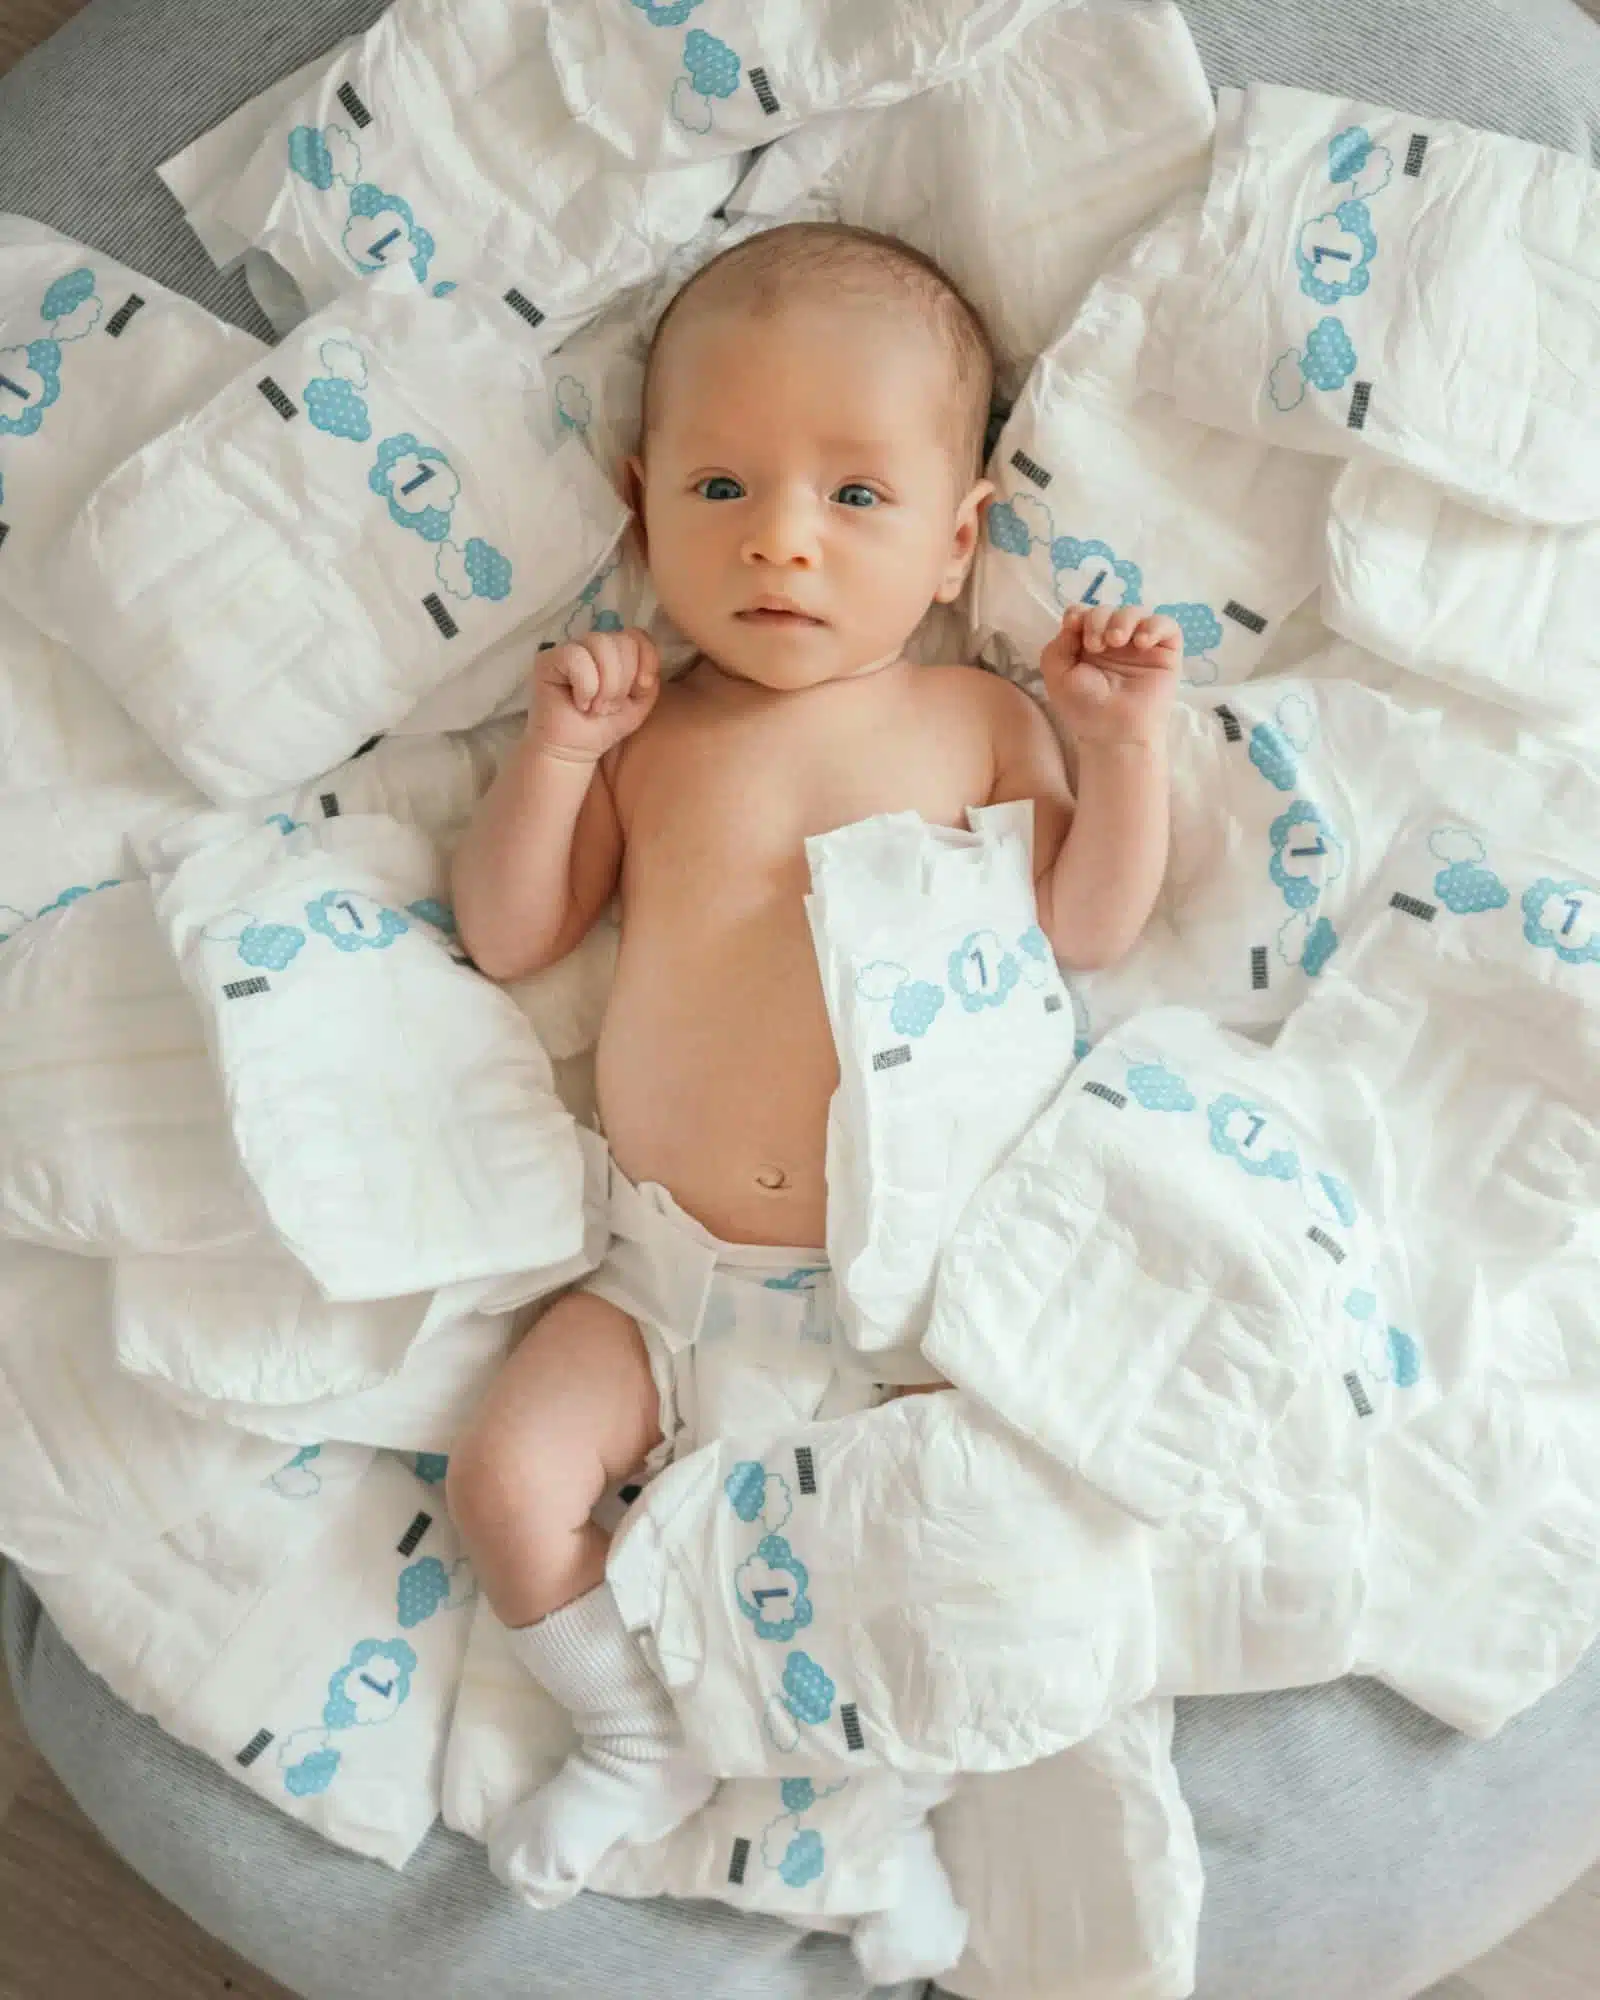 Des couches saines pour votre bébé : importance des matériaux hypoallergéniques